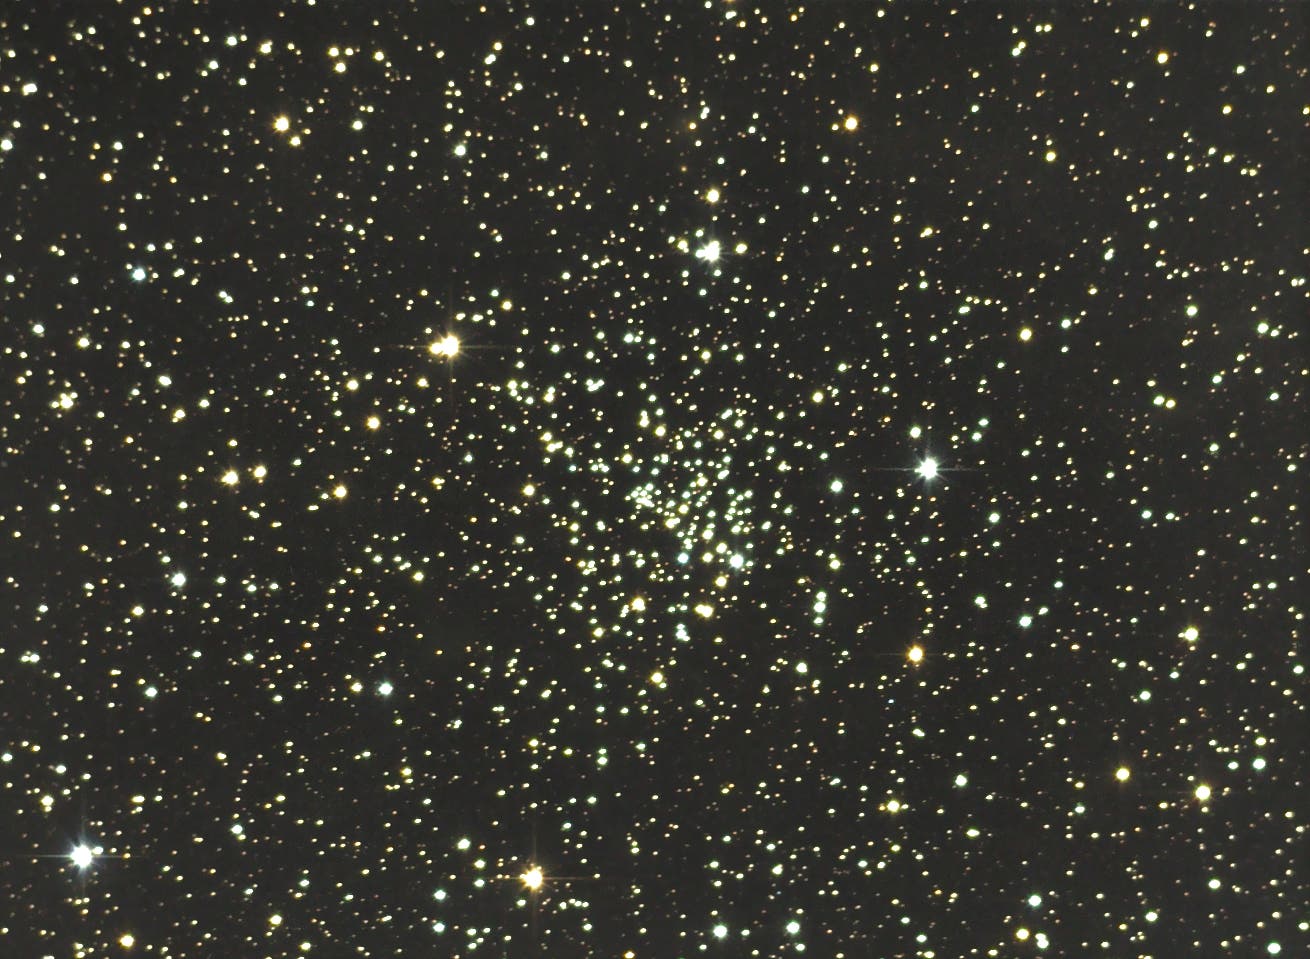 NGC 6939 - offener Sternhaufen im Kepheus